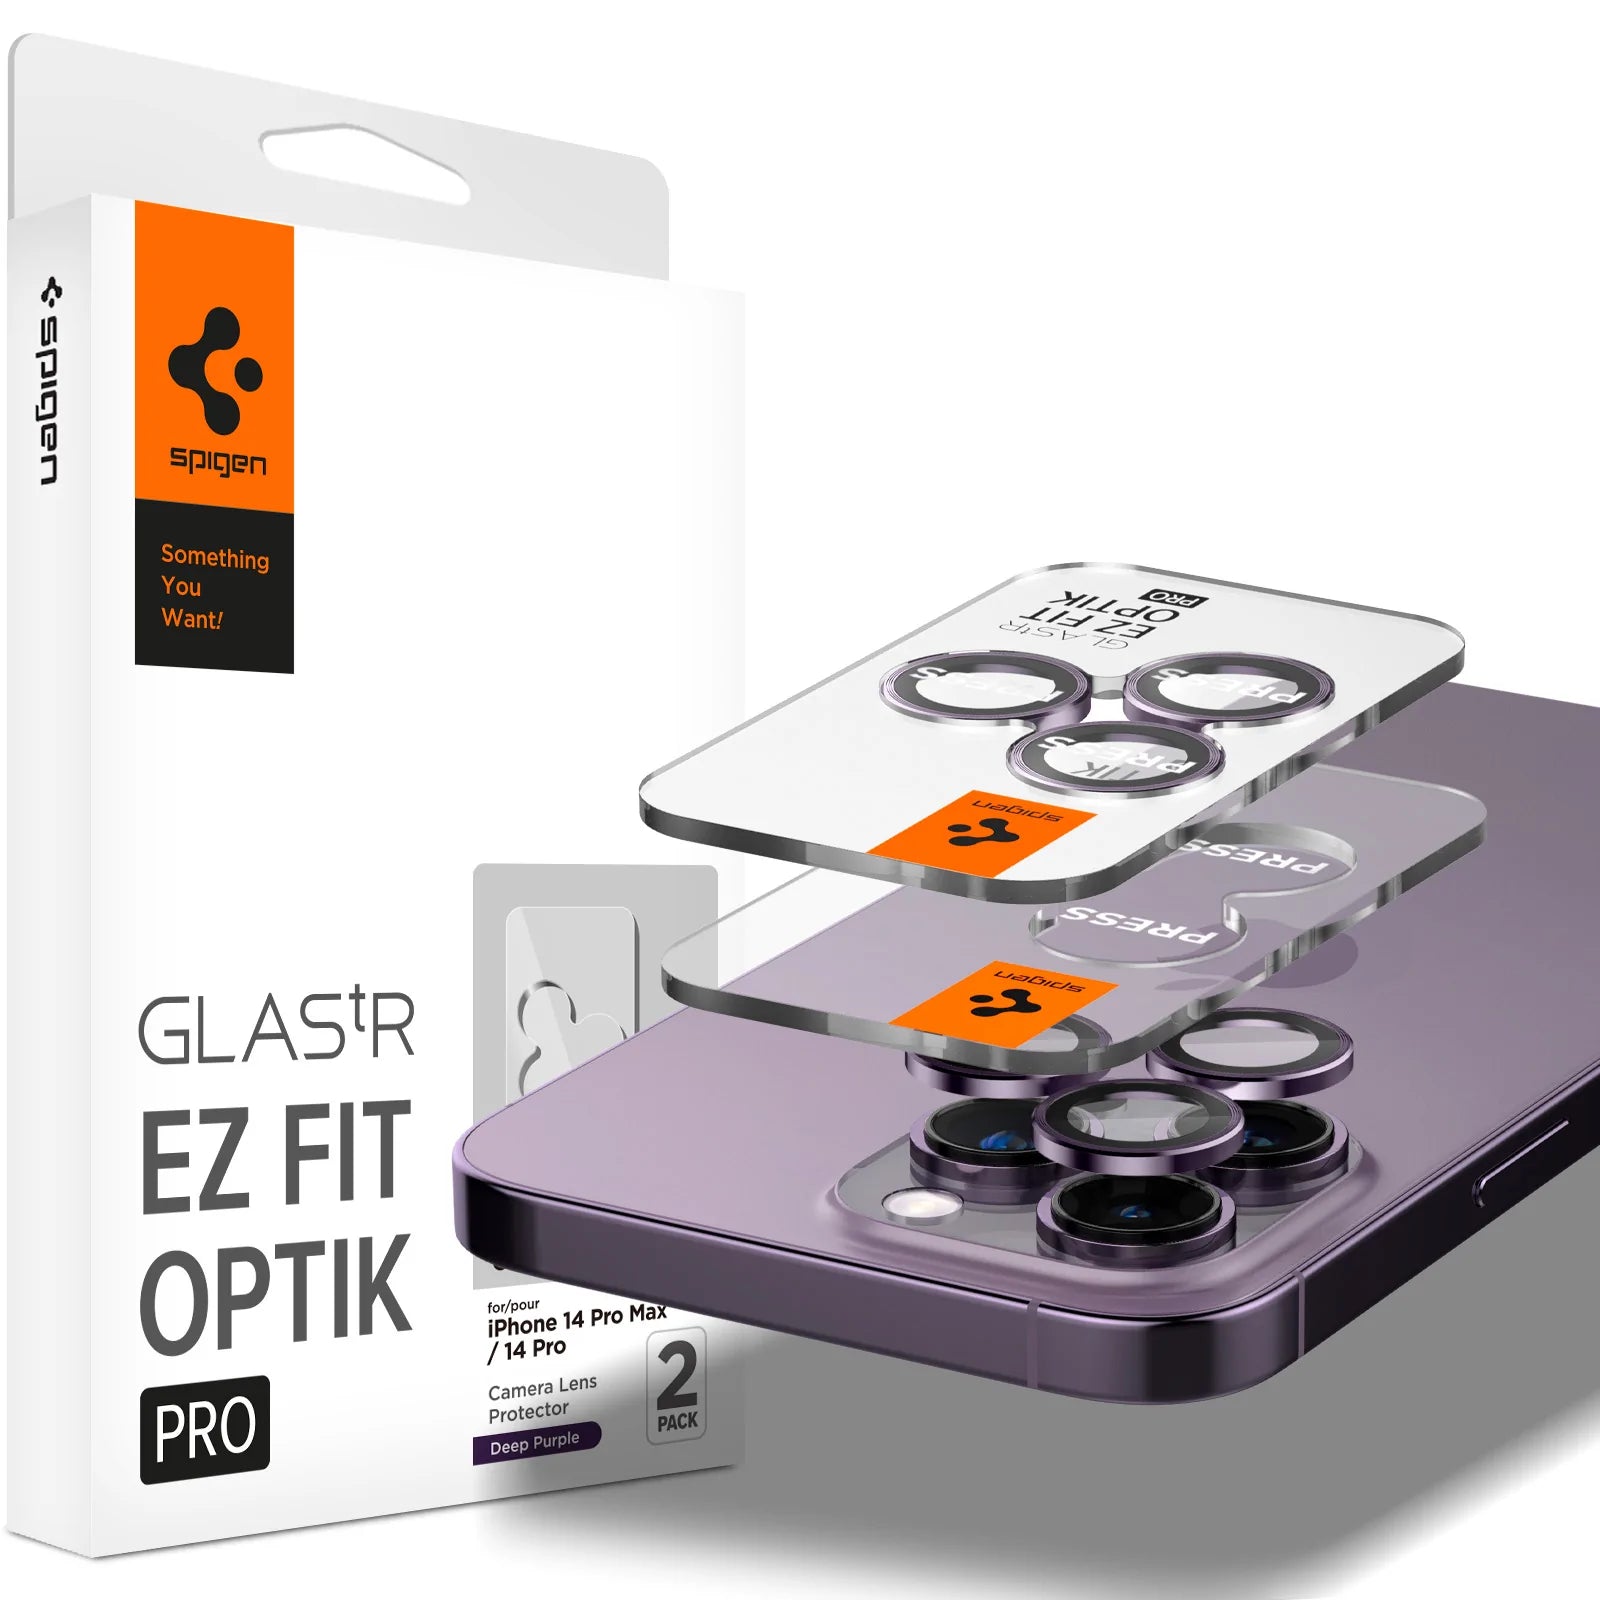 Spigen Funda Optik Armor mag Funda para Apple iPhone 14 Pro MAX